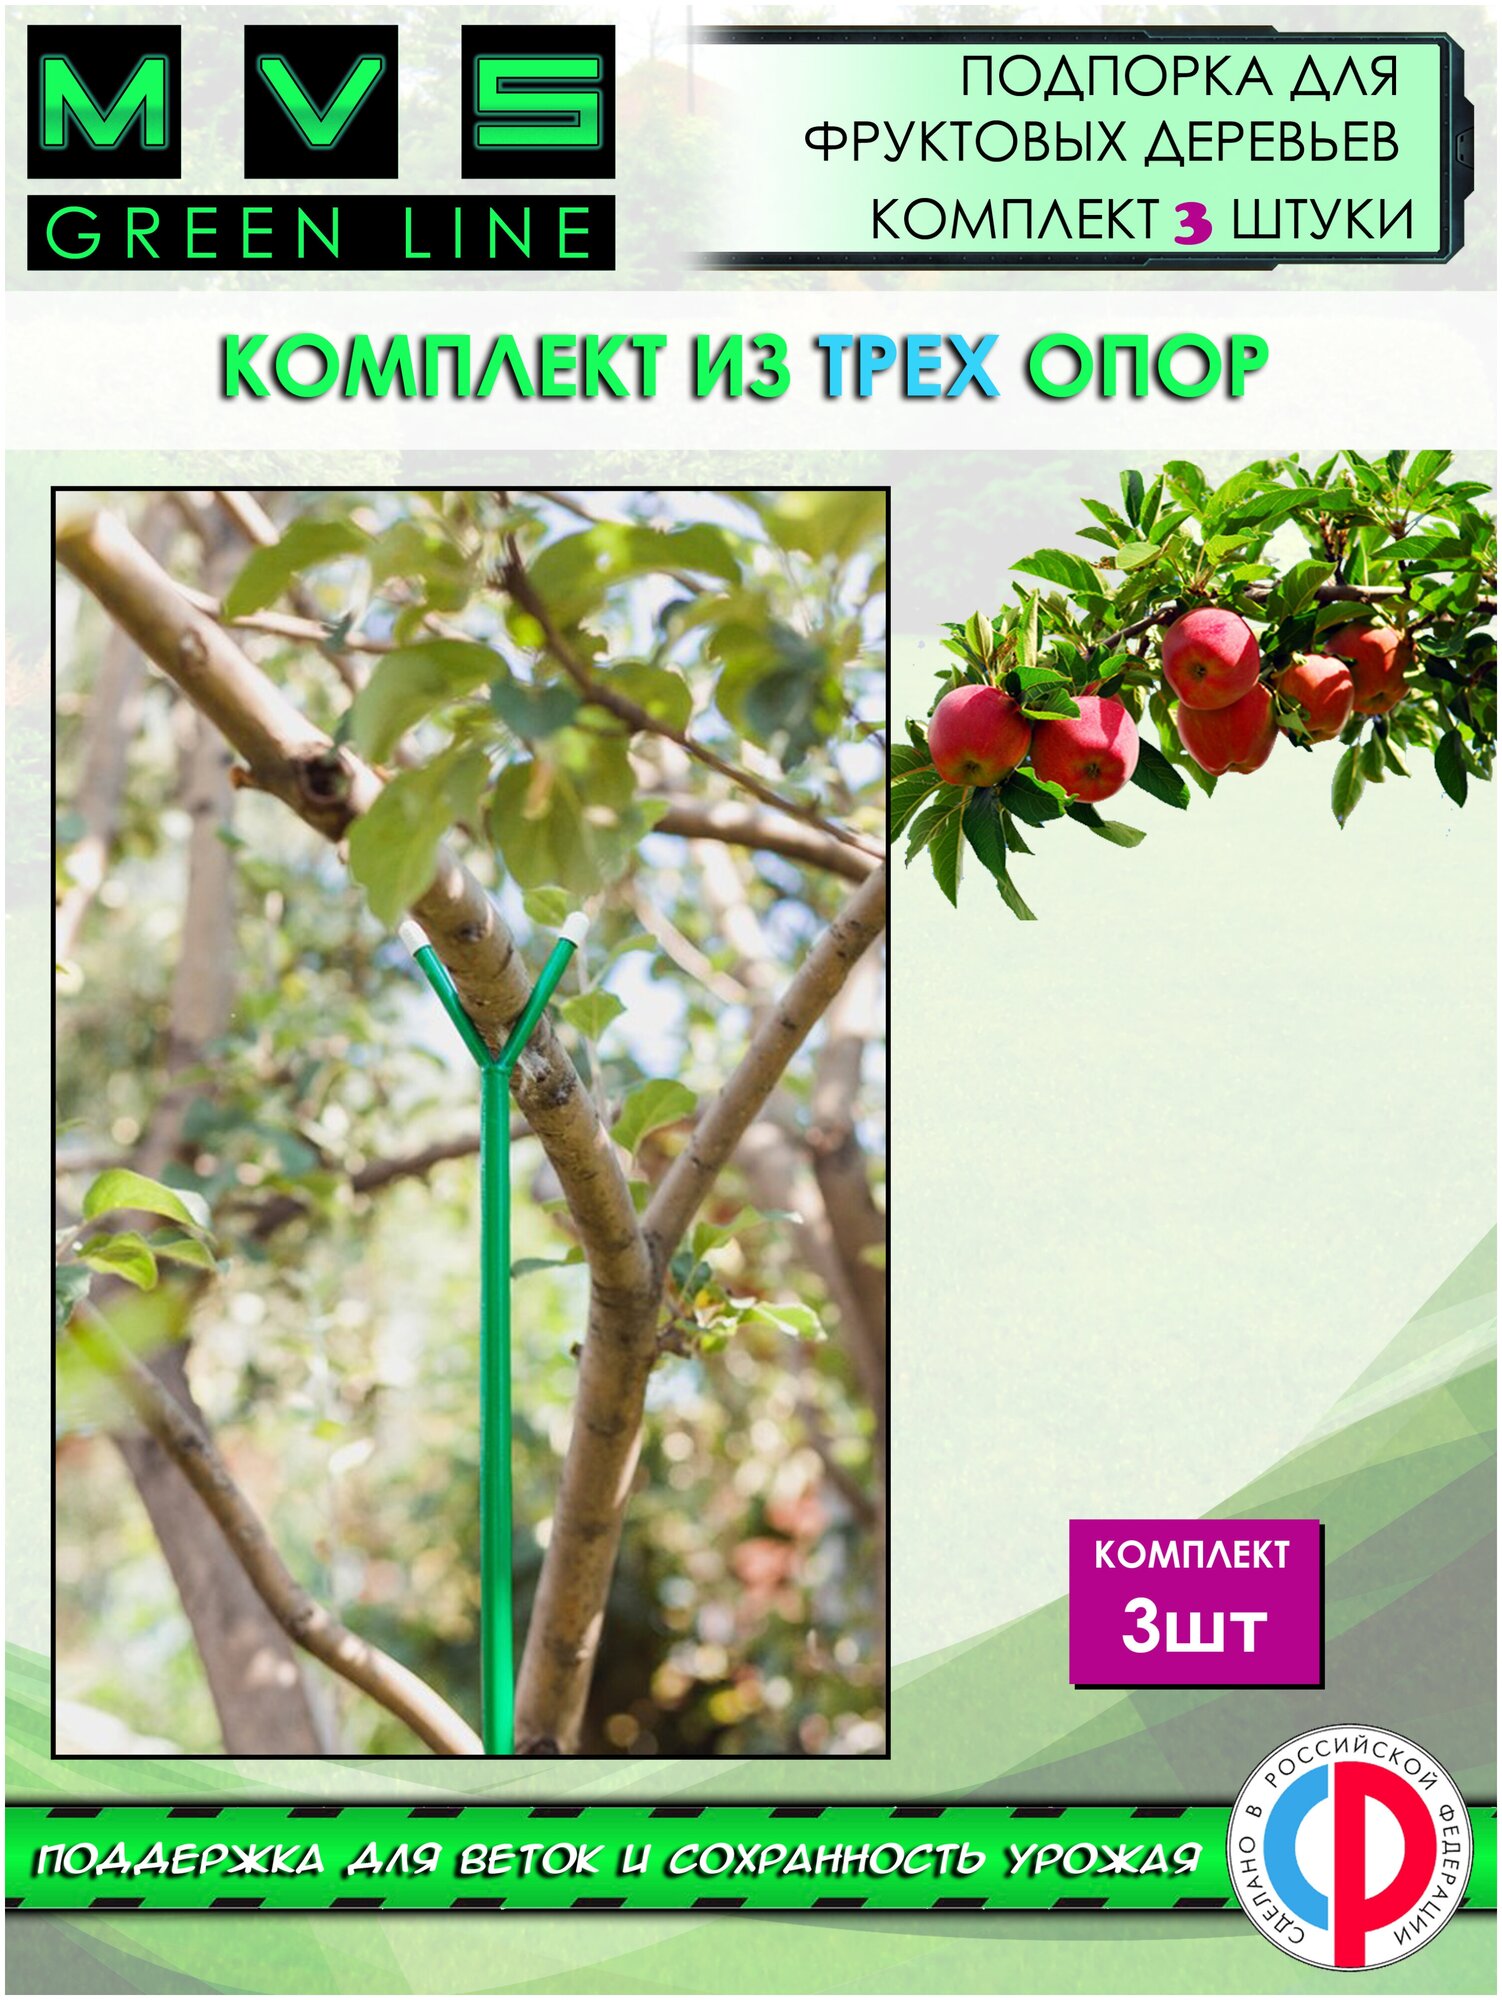 Подпорка для фруктовых деревьев Опора для веток и кустарников H-16 м 3 штуки